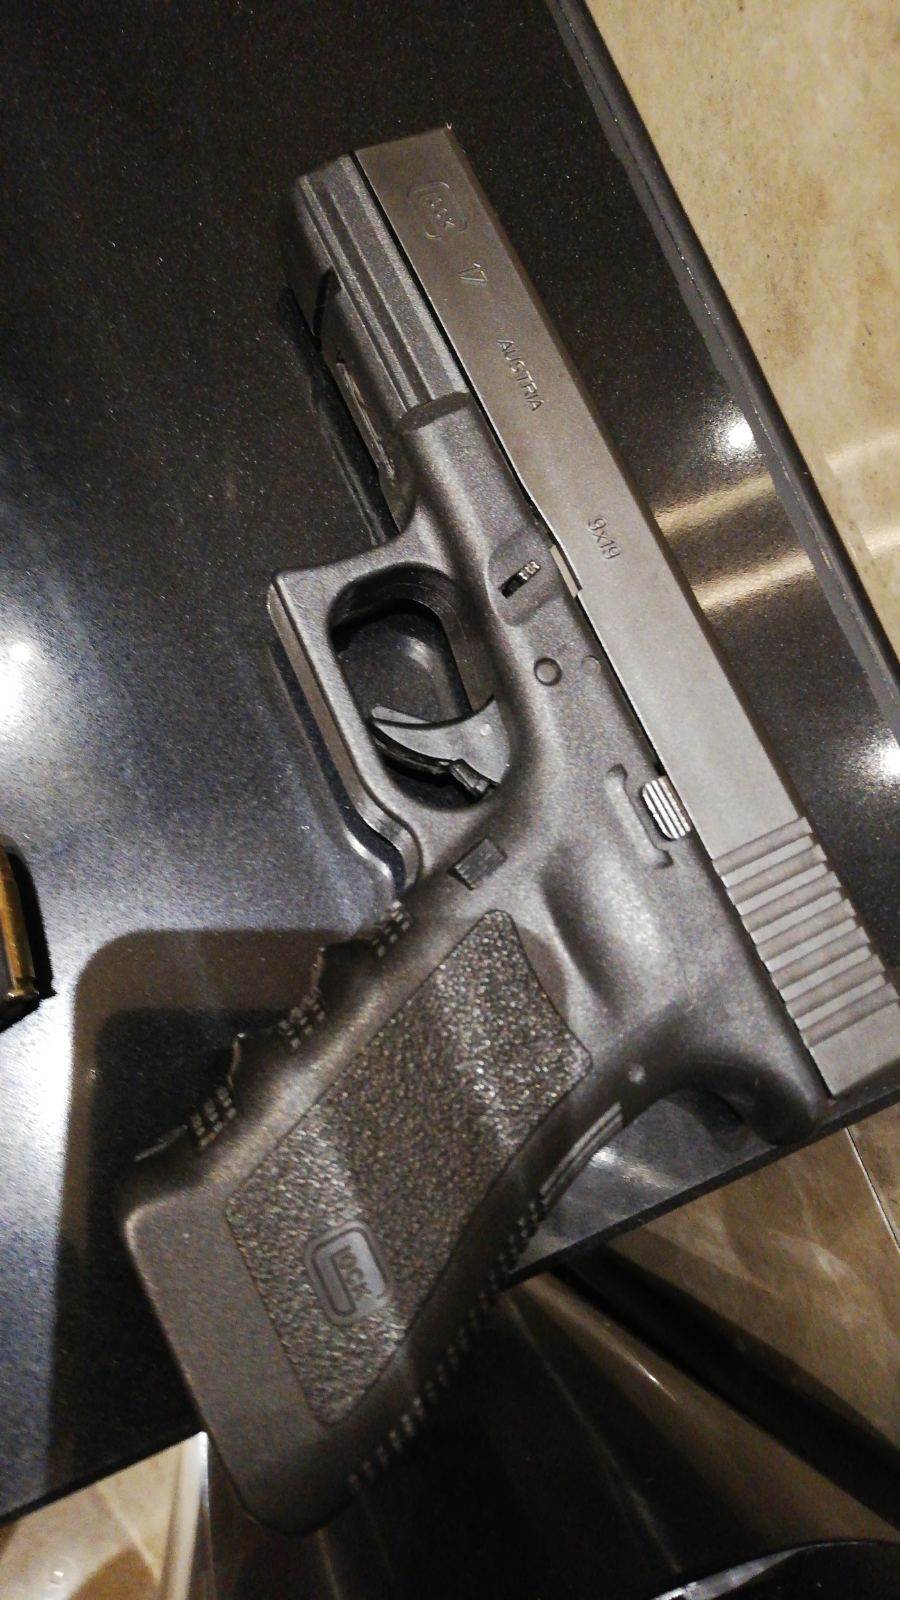  Identifikovana i uhapšena osoba čiji je pištolj pronađen u hotelu u Baru 